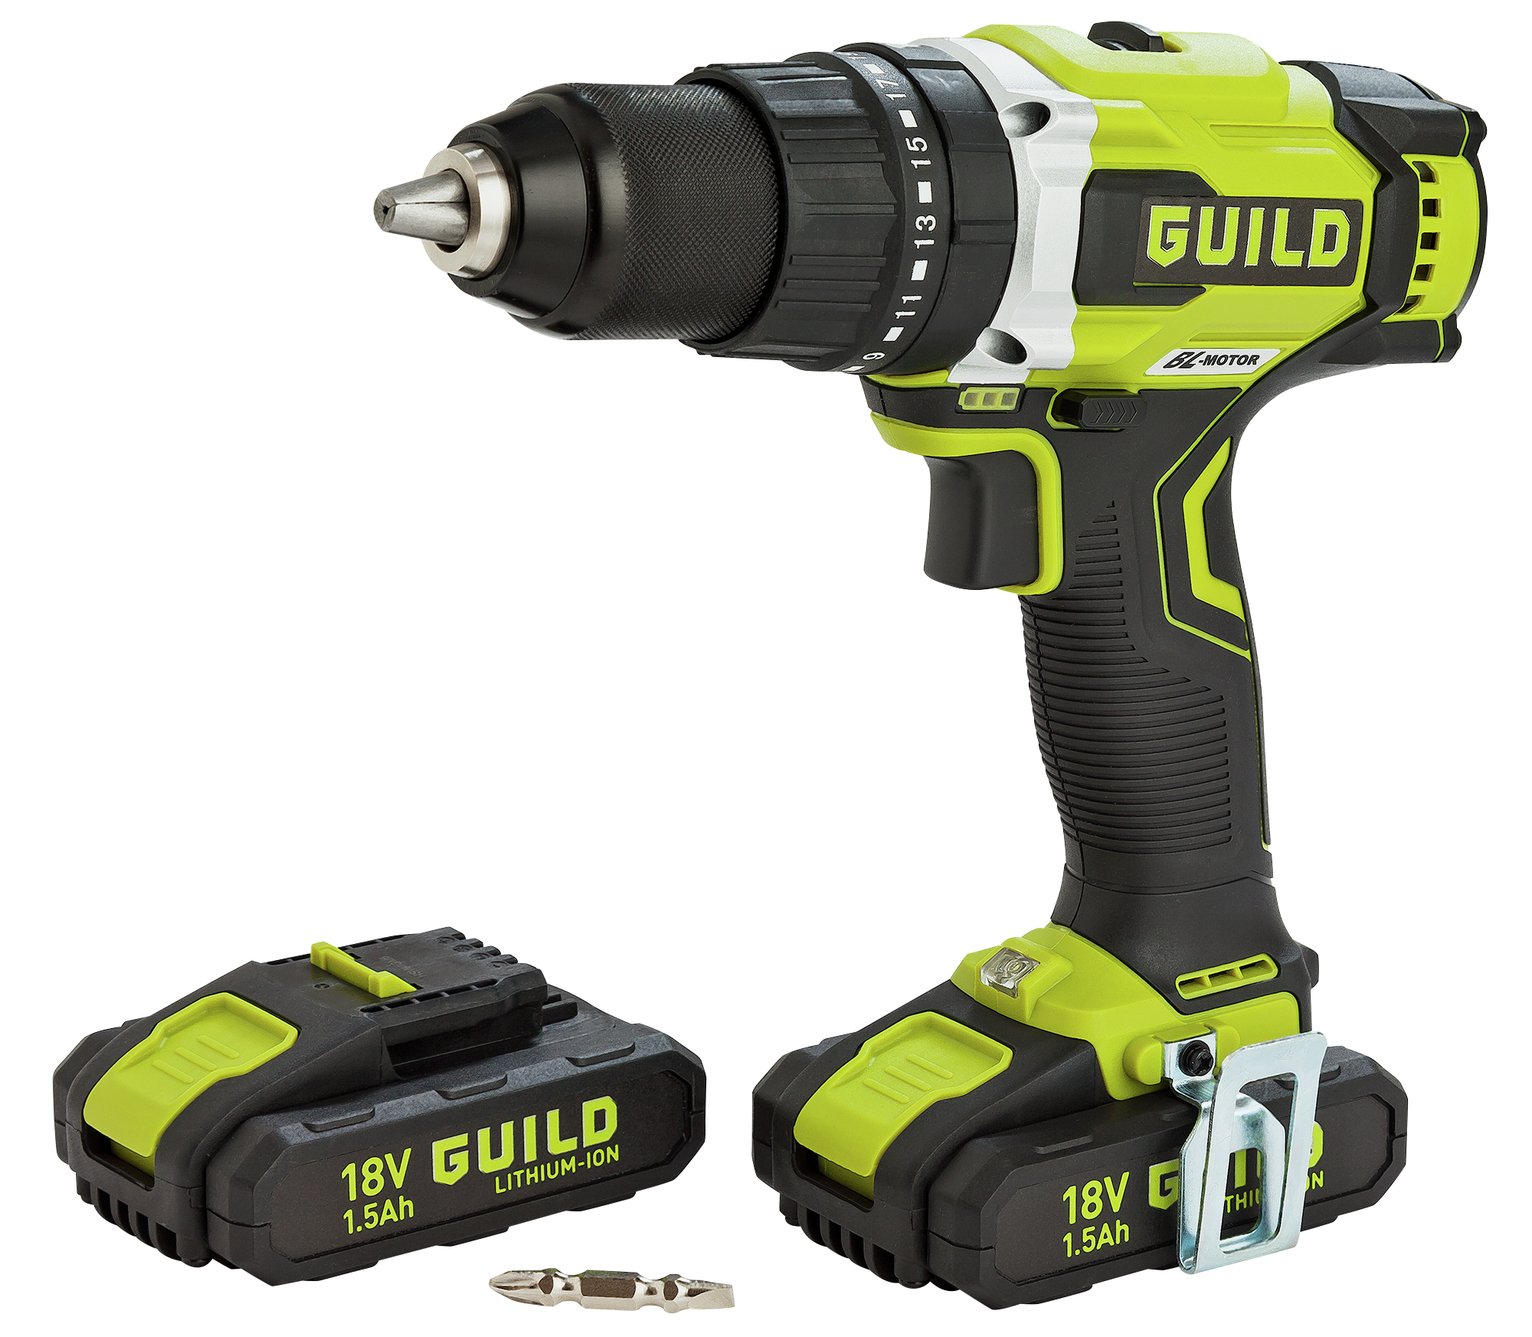 Guild - 2 Battery Brushless Hammer Drill ? 18v Review